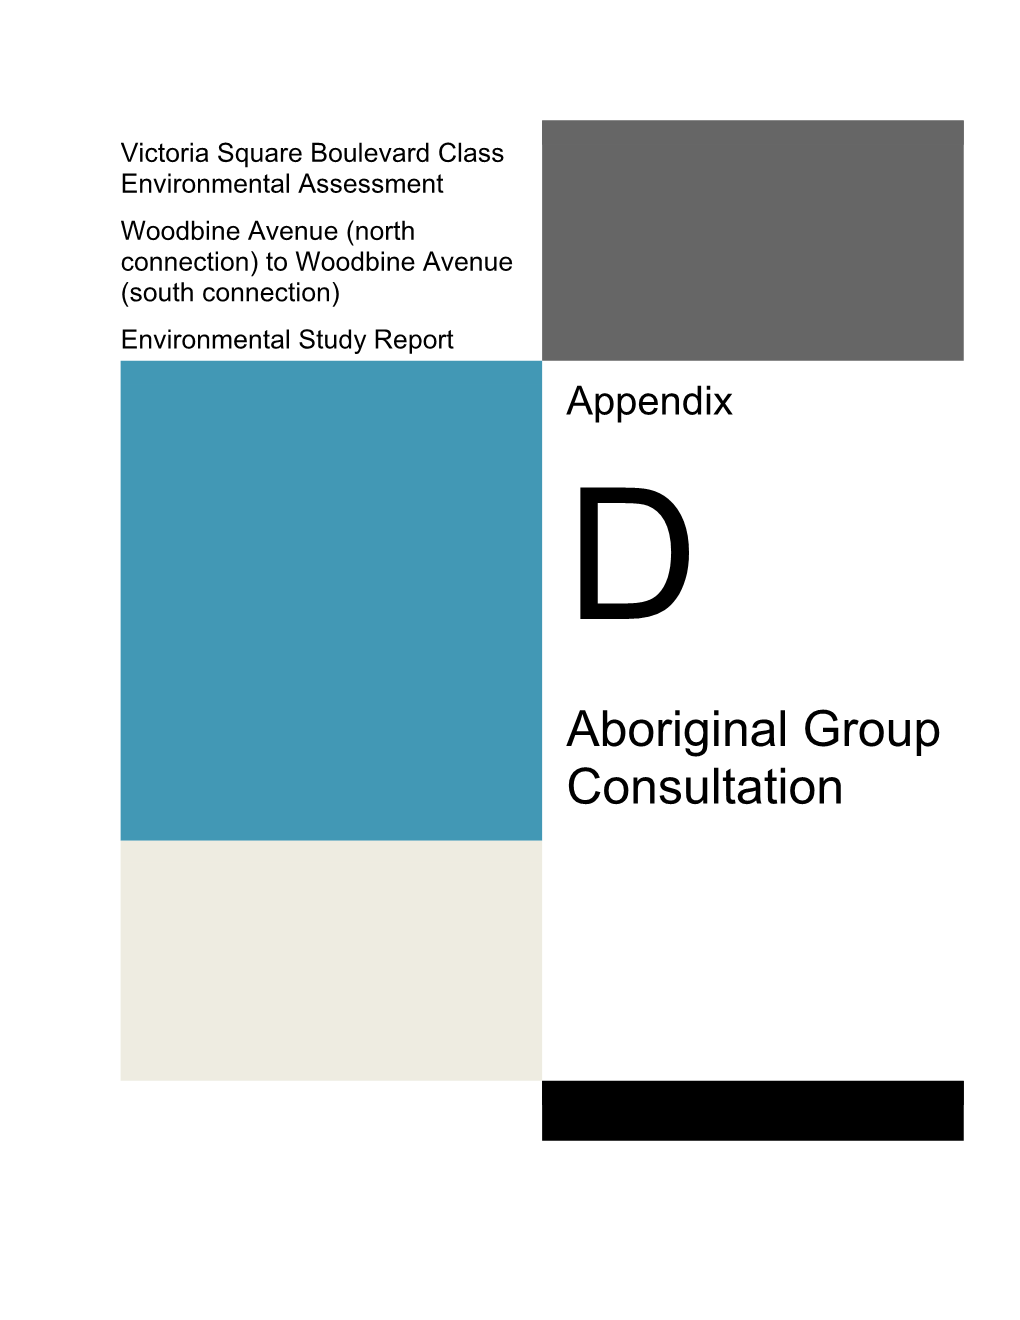 Aboriginal Group Consultation